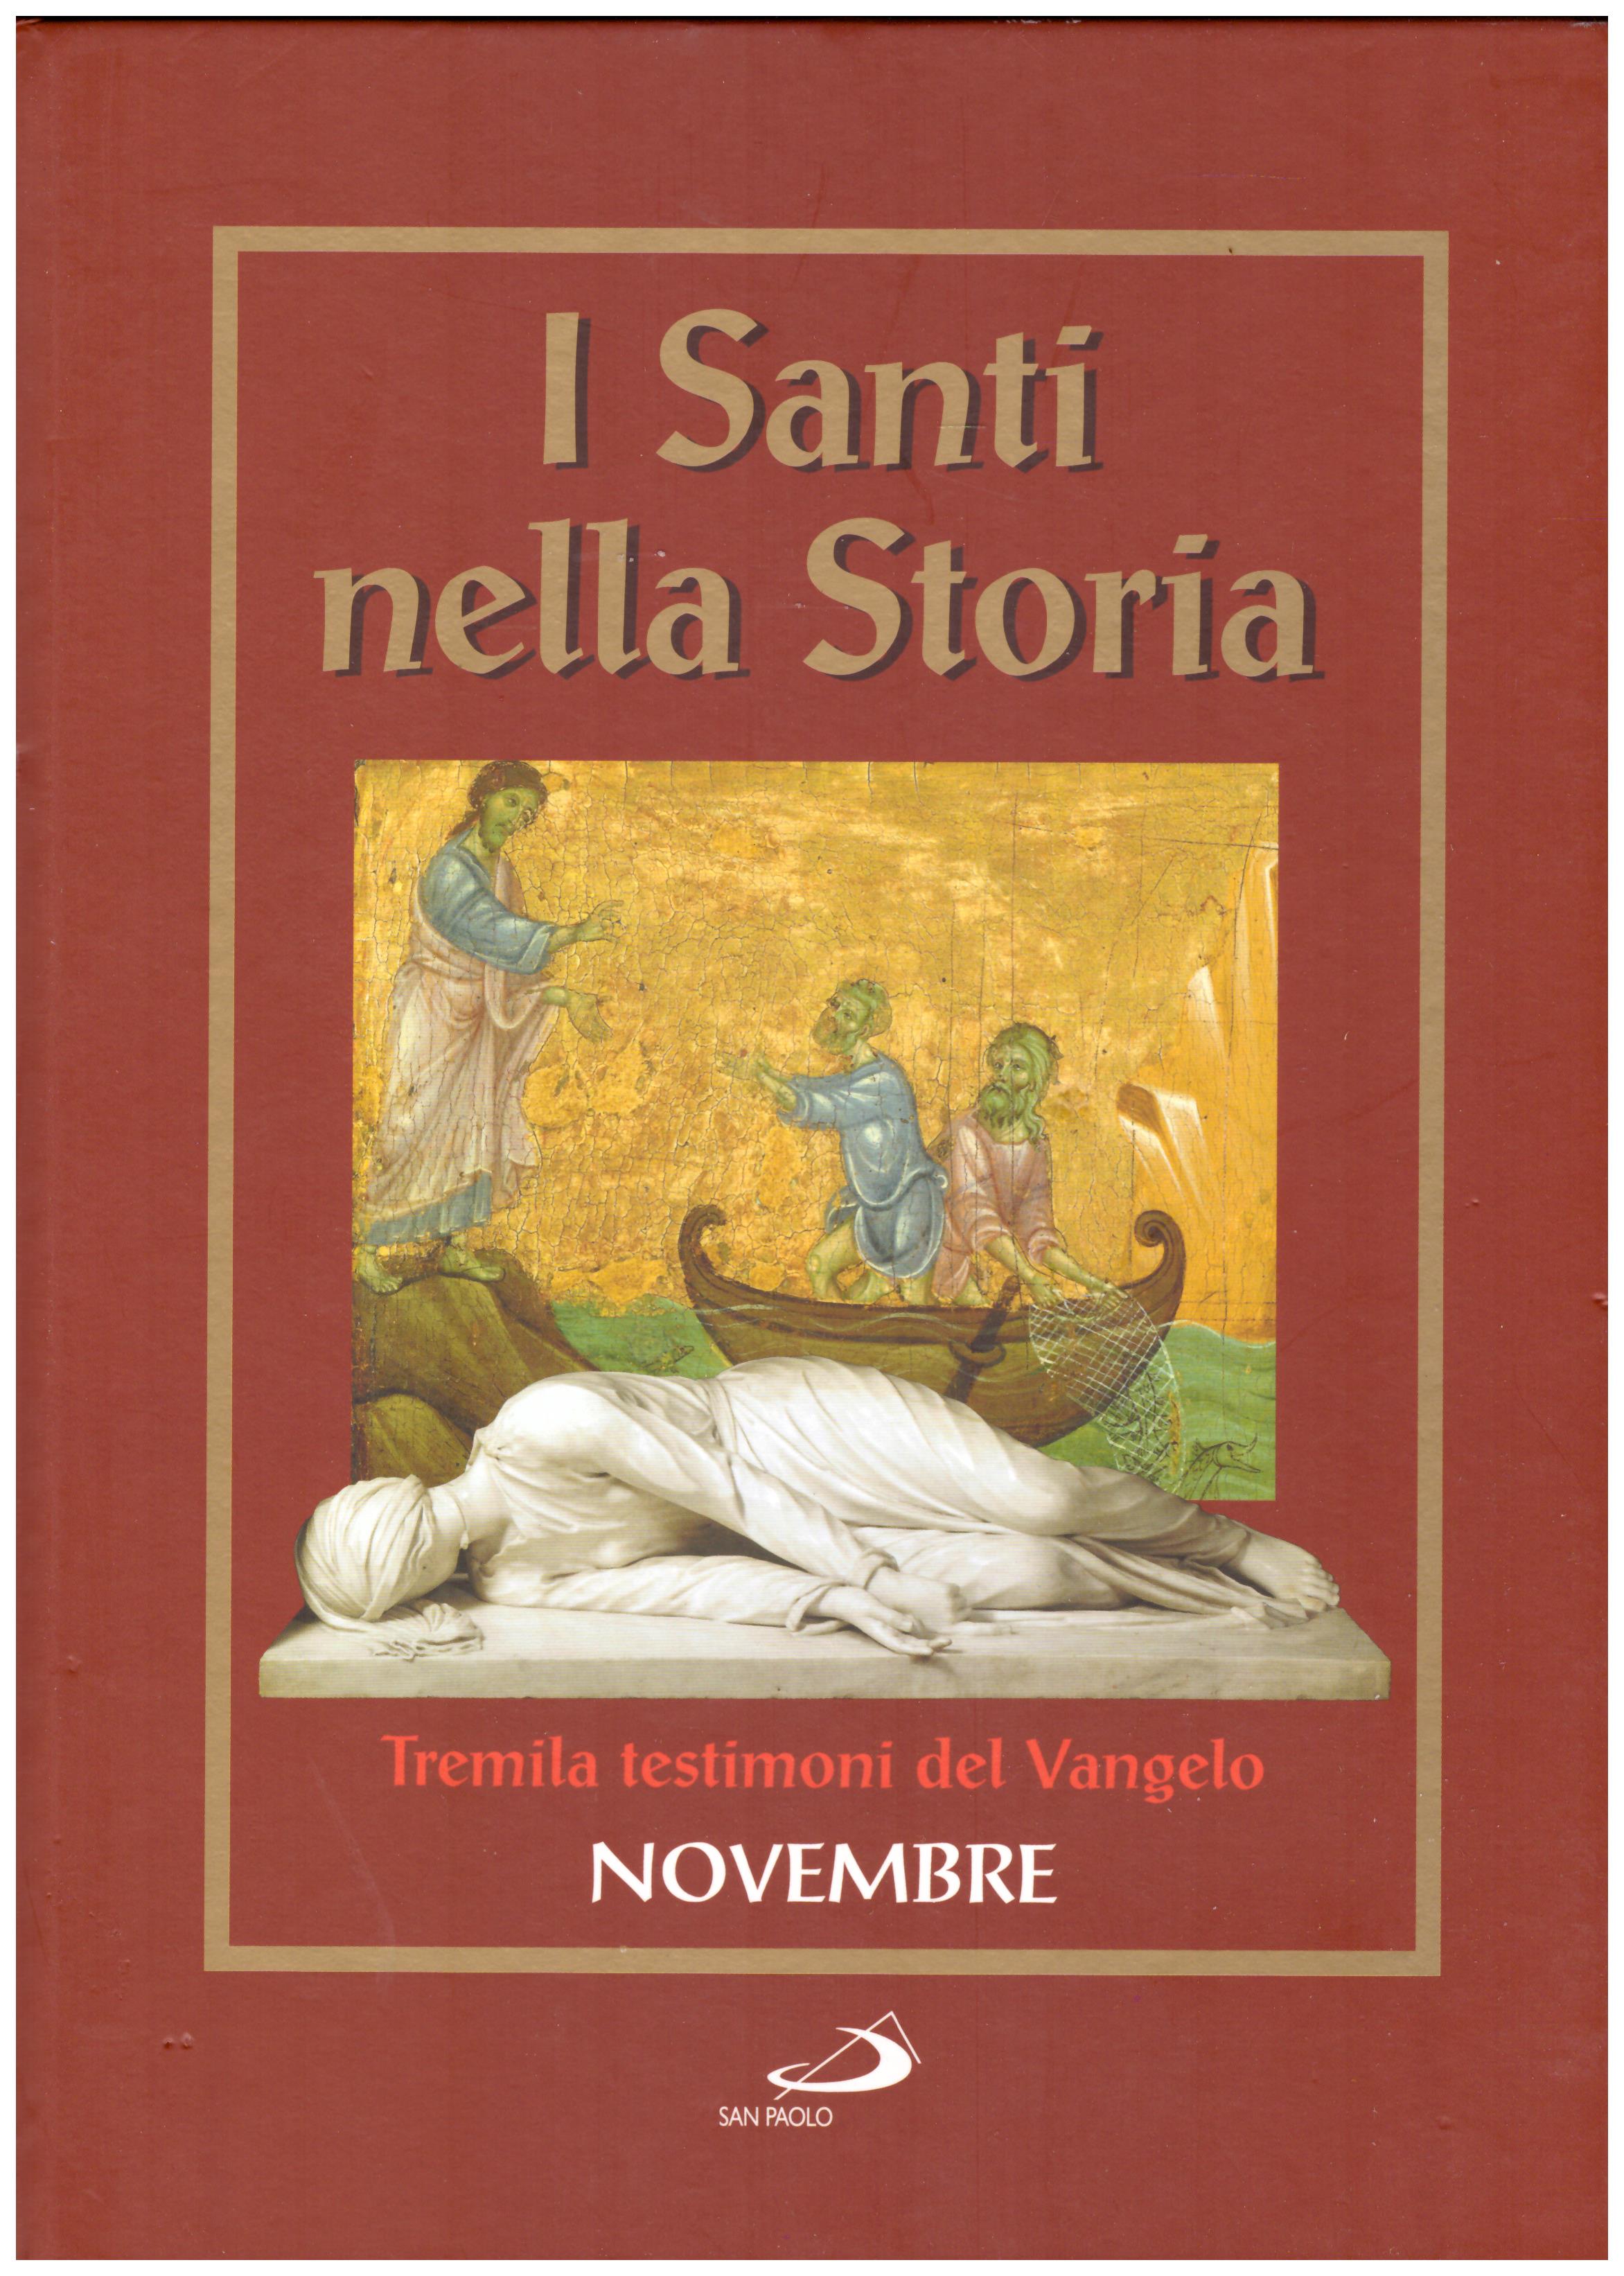 Titolo: I santi nella storia, tremila testimoni del Vangelo, Novembre Autore : AA.VV.   Editore: San Paolo 2006